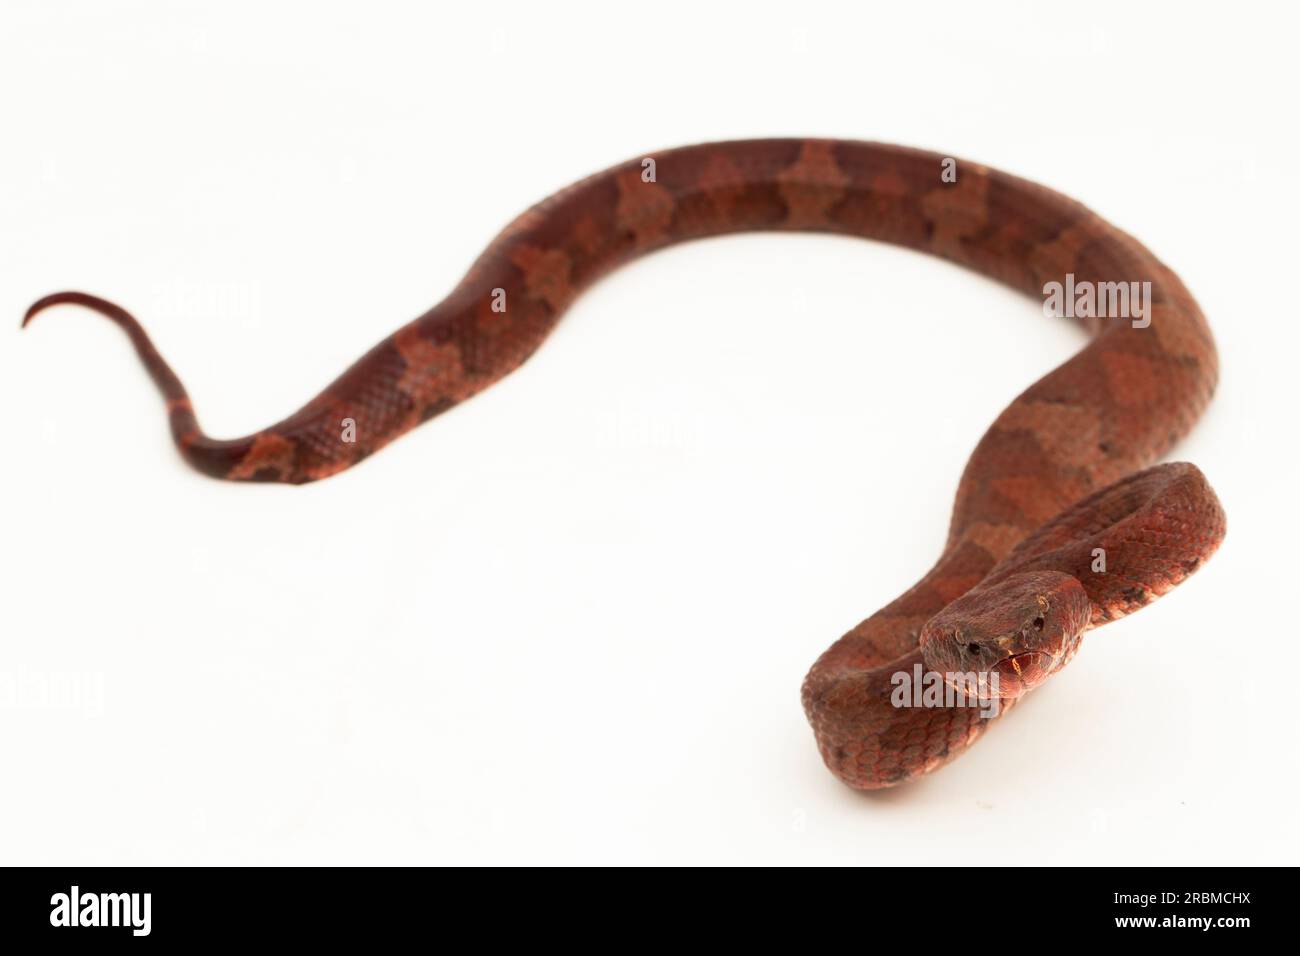 Serpent pitviper à nez plat Craspedocephalus Trimeresurus puniceus isolé sur fond blanc Banque D'Images